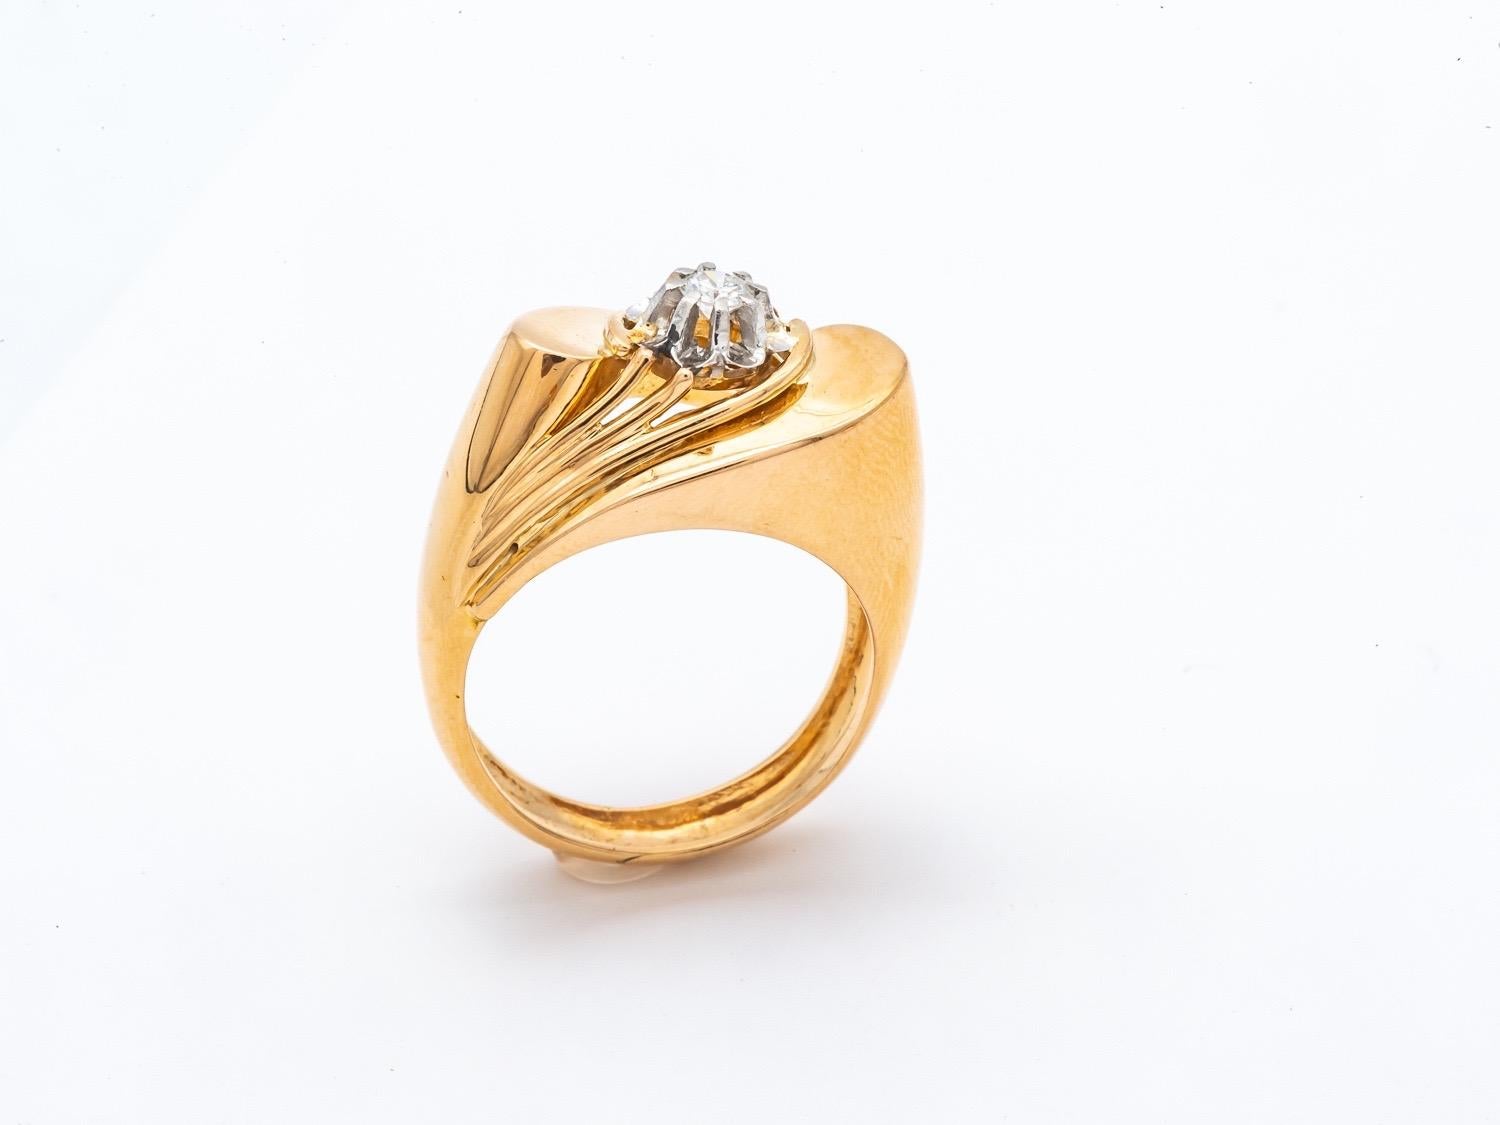 Entdecken Sie den Ring Tank aus 18 Karat Gelbgold, ein Vintage-Stück, das die zeitlose Eleganz und den Retro-Charme der 1940er/1950er Jahre verkörpert. Gekrönt von einem prächtigen Diamanten im Brillantschliff von 0,12 Karat ist dieser Ring ein